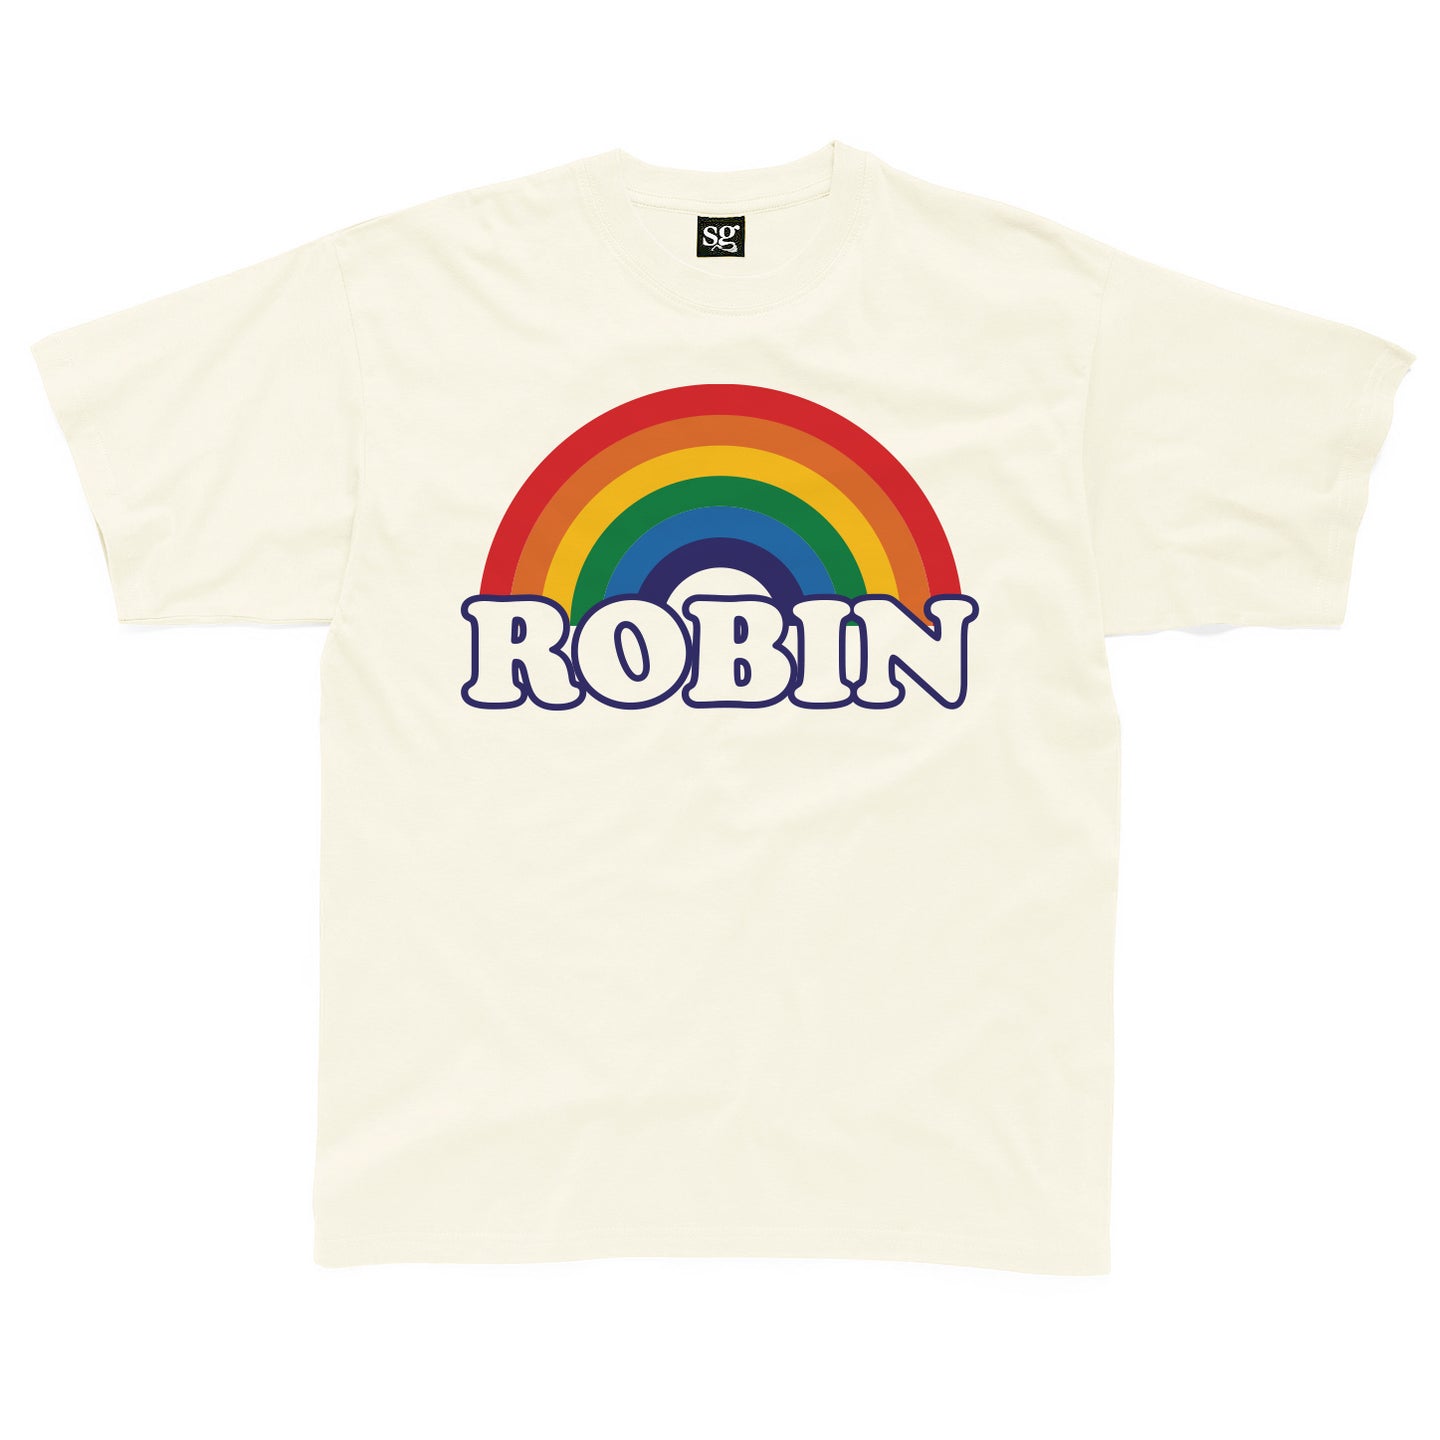 Personalised retro rainbow kids t-shirt